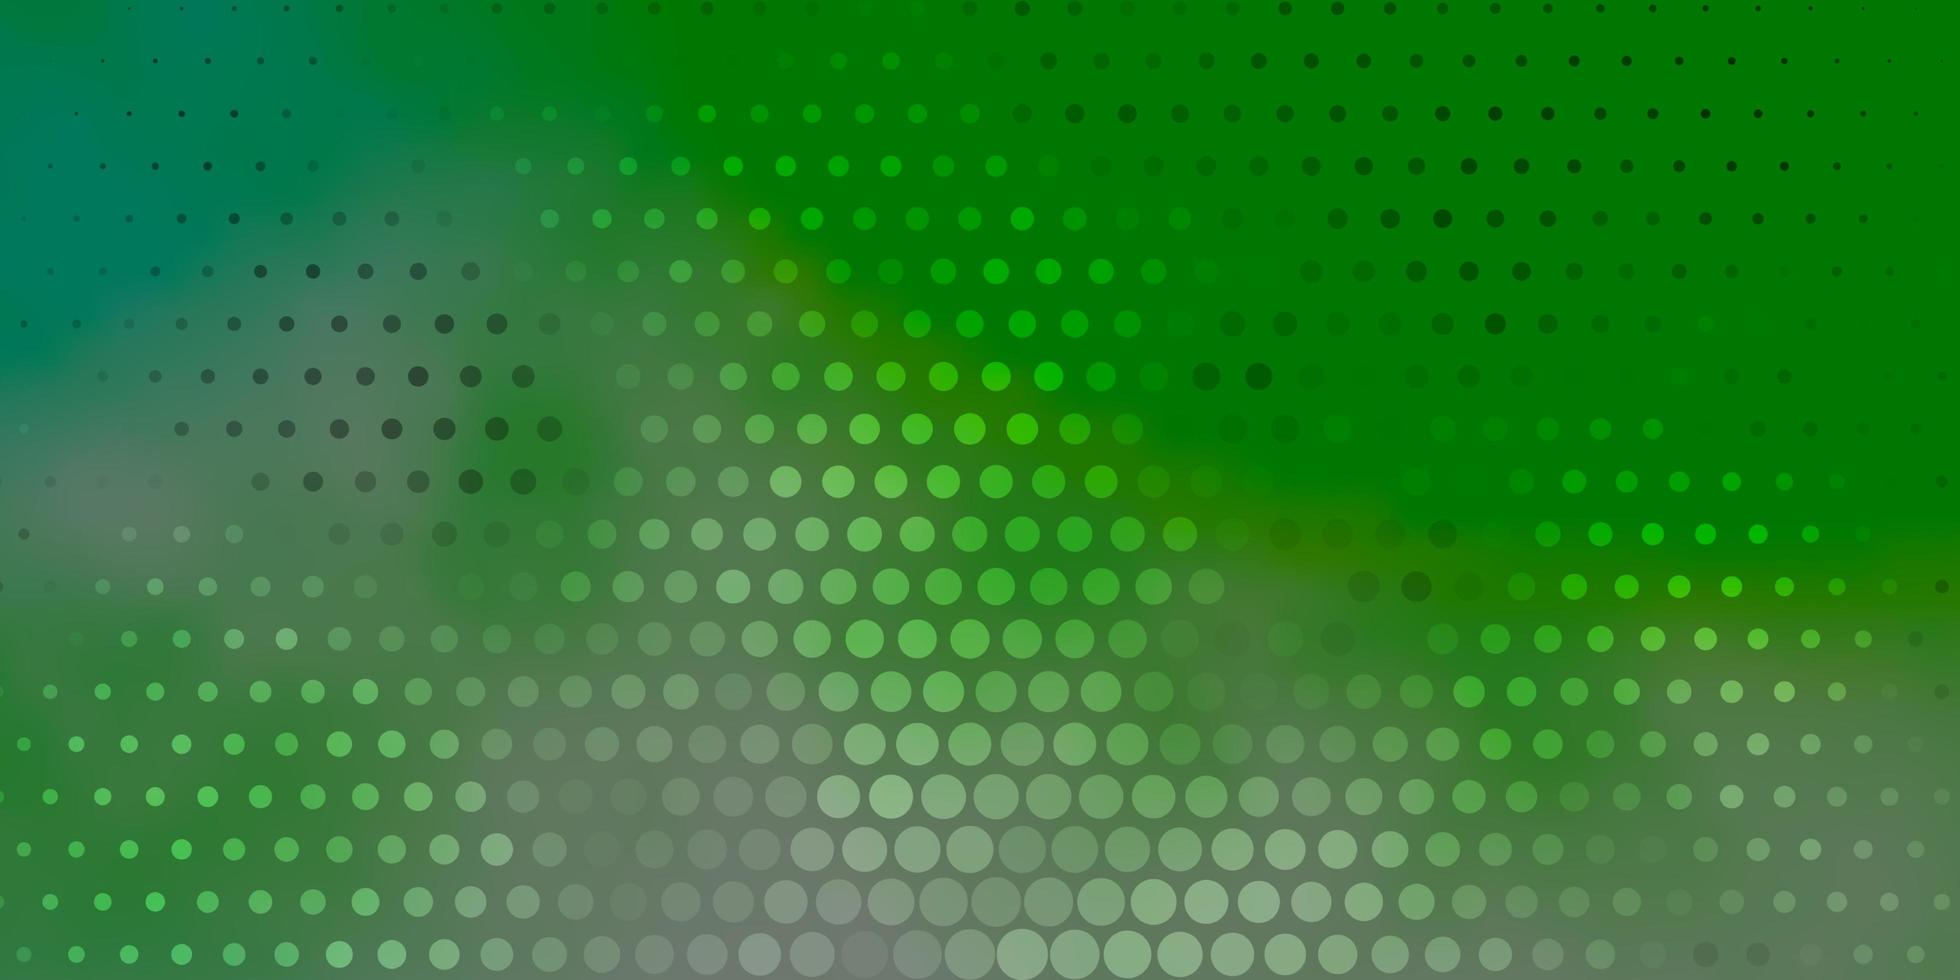 hellgrüne Vektorbeschaffenheit mit Scheiben. vektor